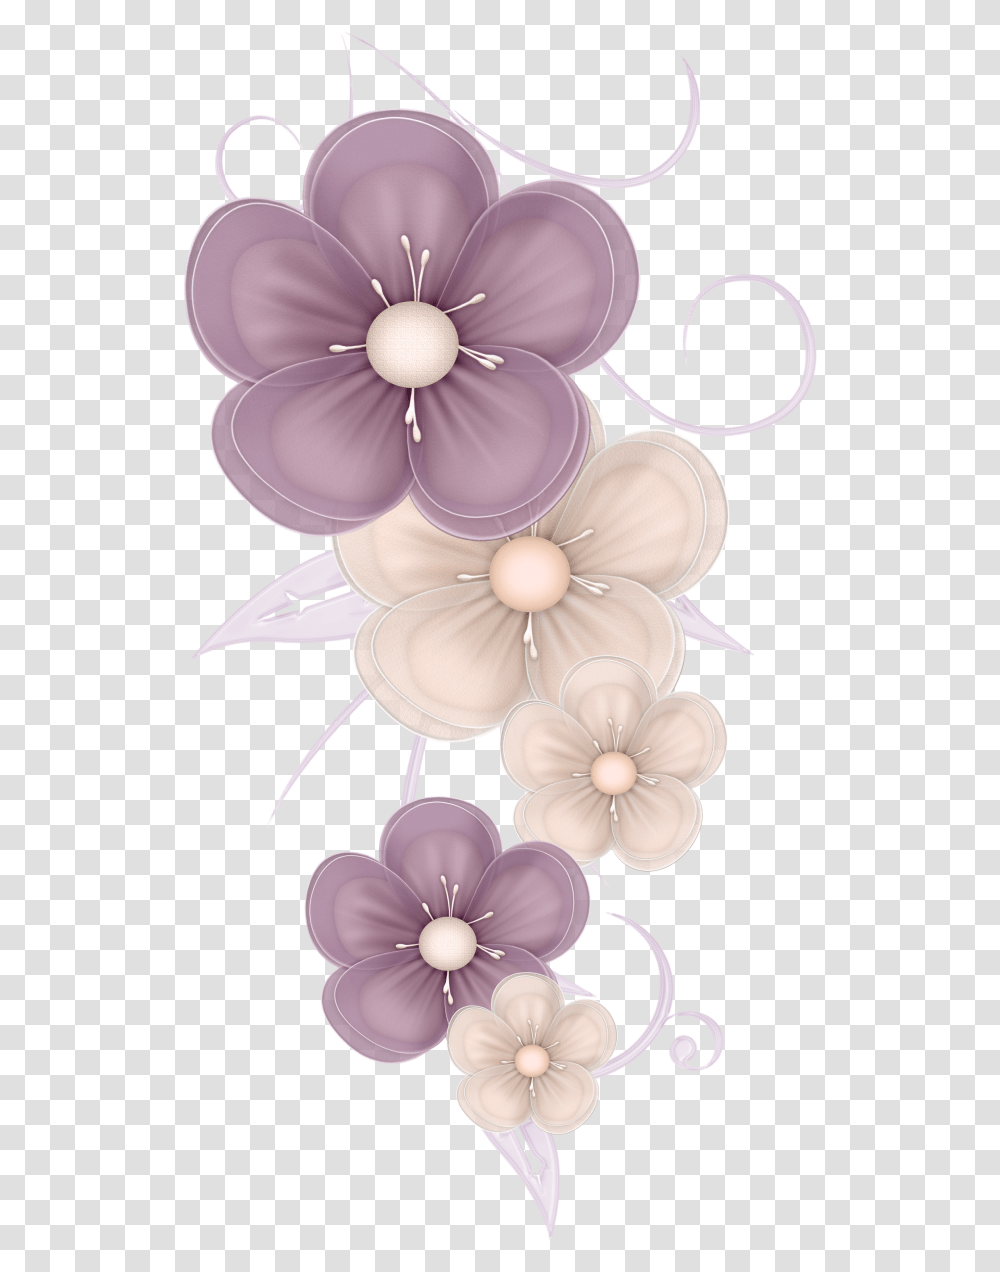 Cute Flowers Decor Picture Sz Nes Cute Decoration Clipart, Floral Design, Pattern, Graphics, Jewelry Transparent Png